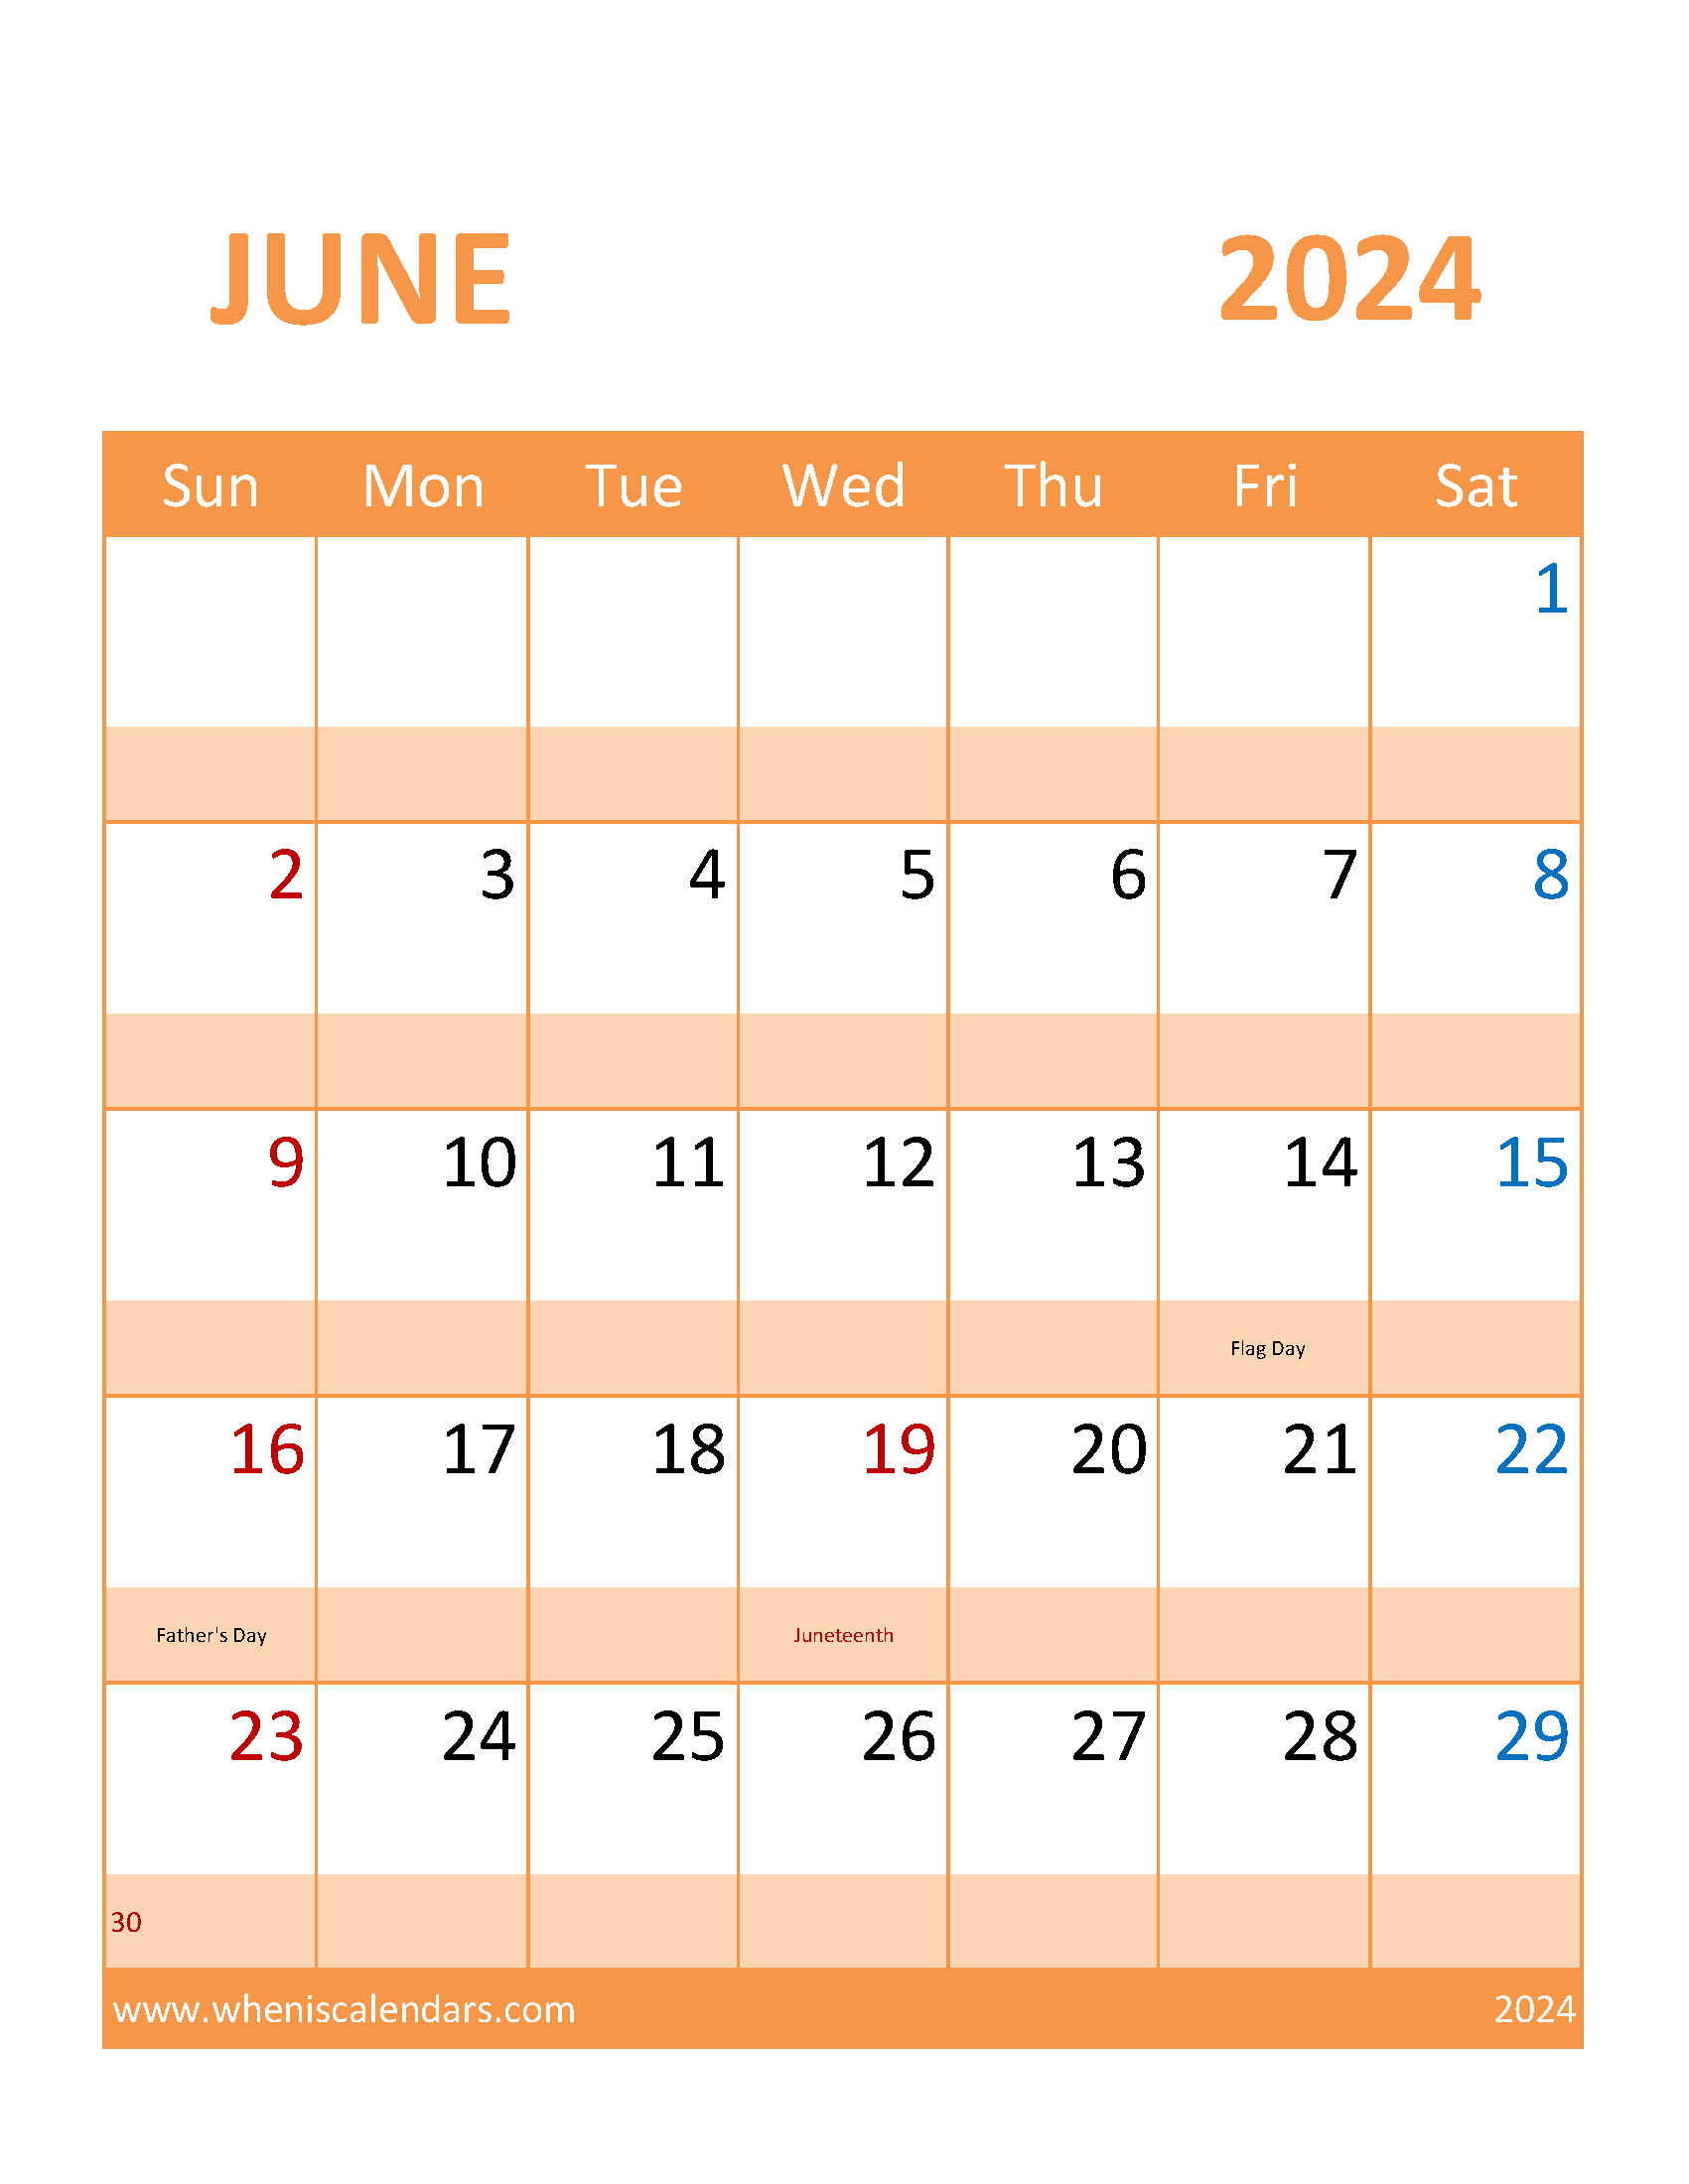 June 2024 work Calendar Monthly Calendar